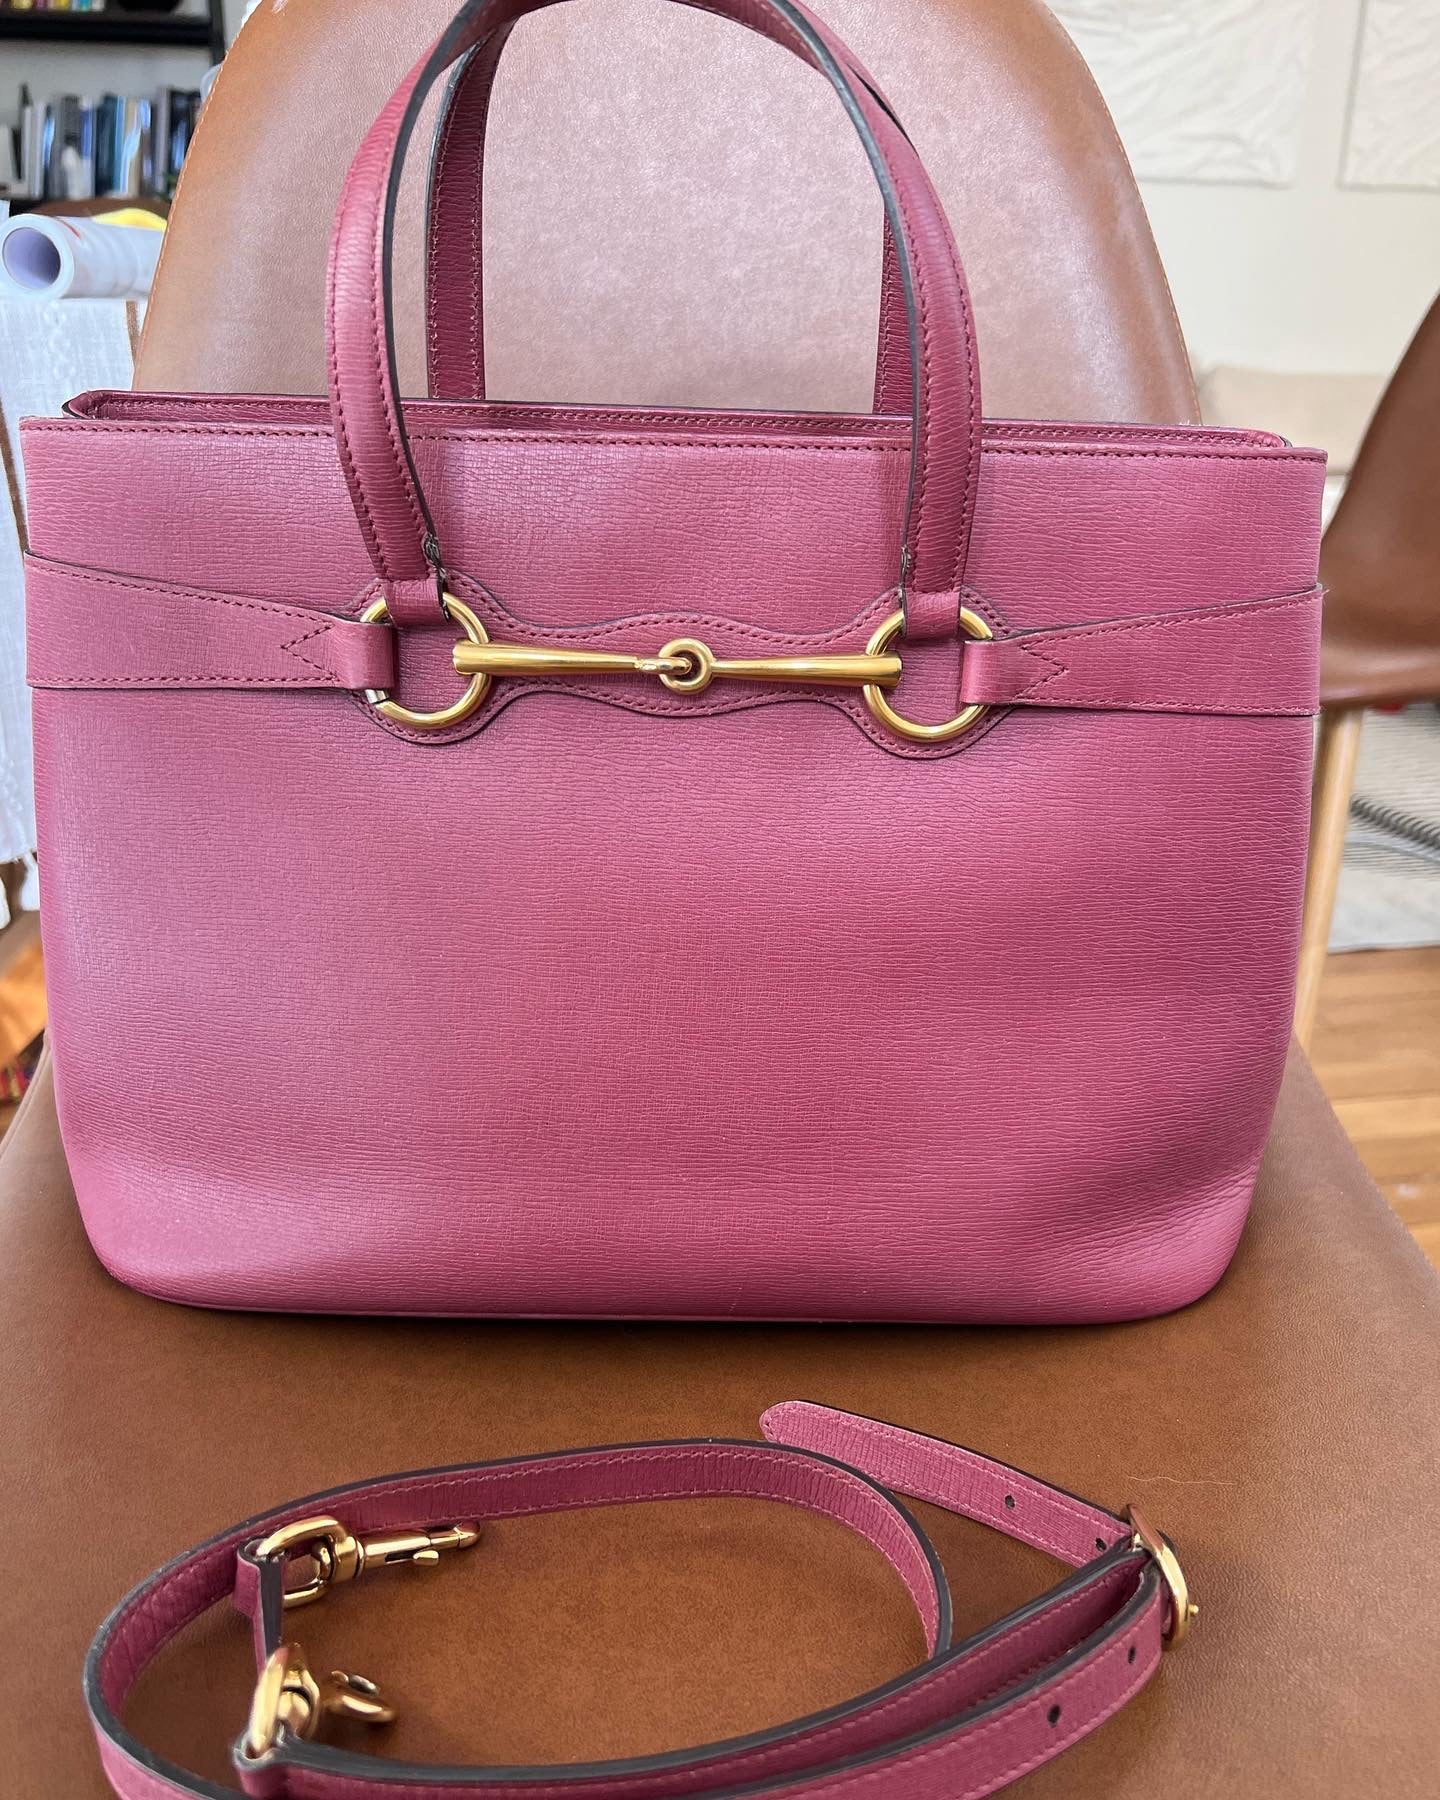 Gucci Horsebit 1955 Medium Tote Bag in Pink